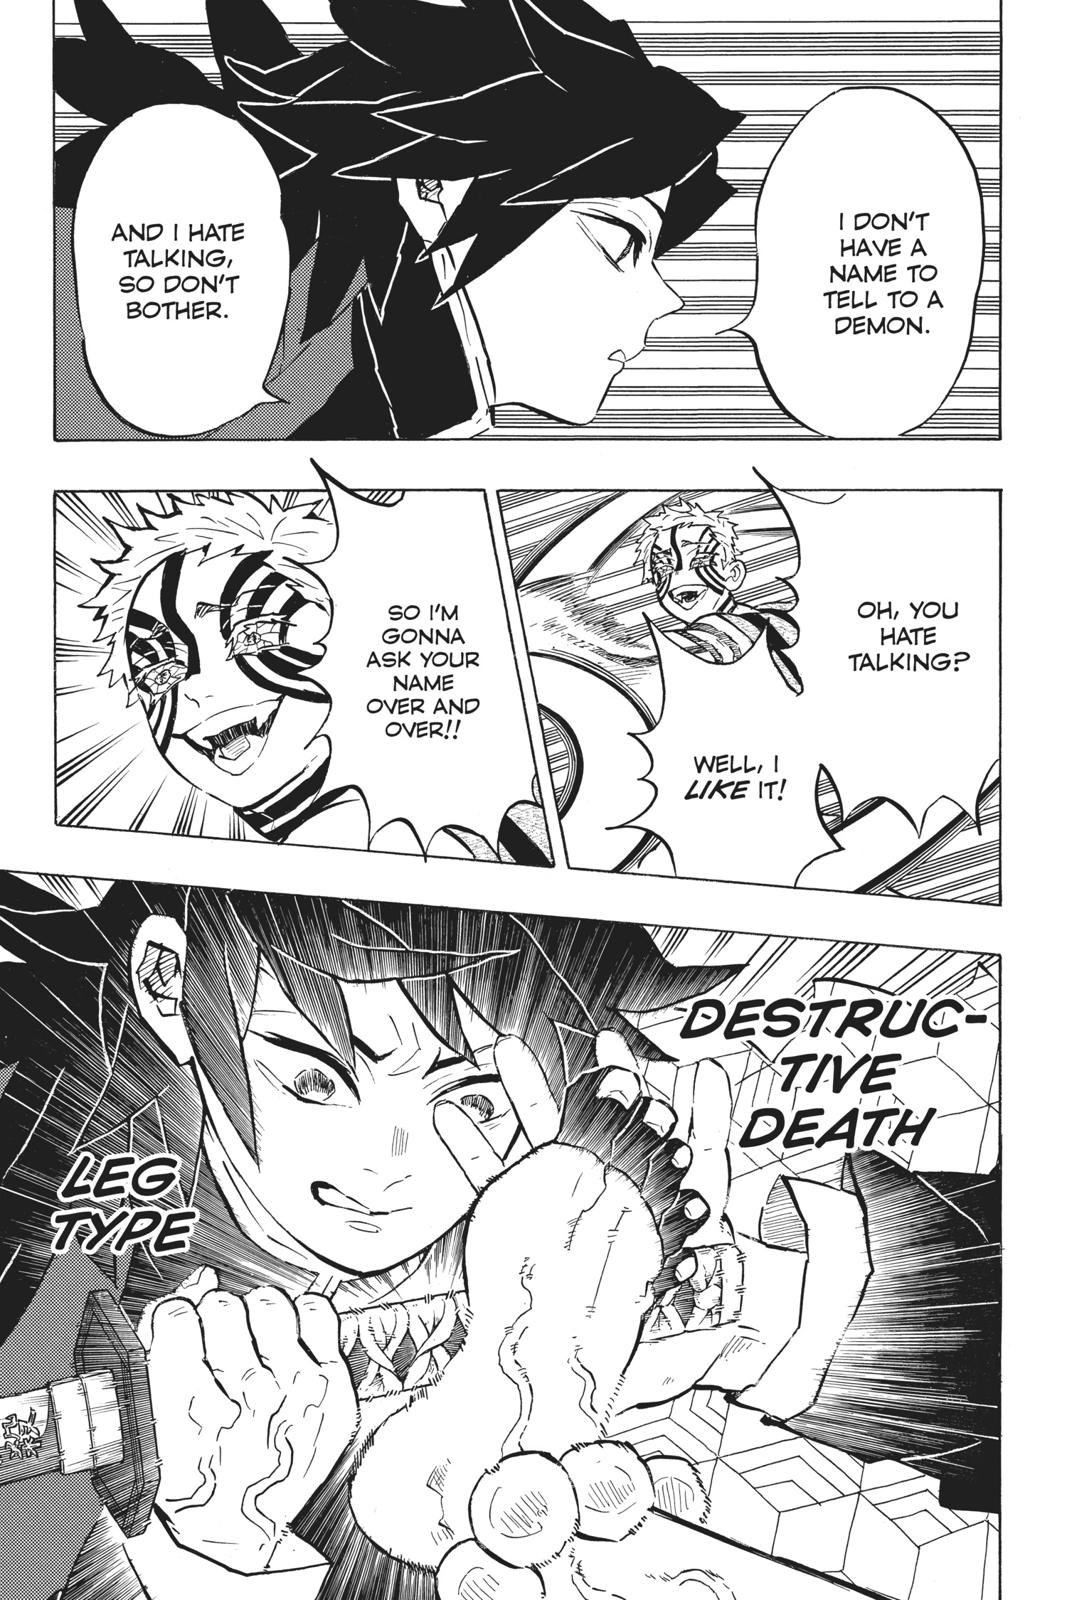 Demon Slayer Manga Manga Chapter - 148 - image 4